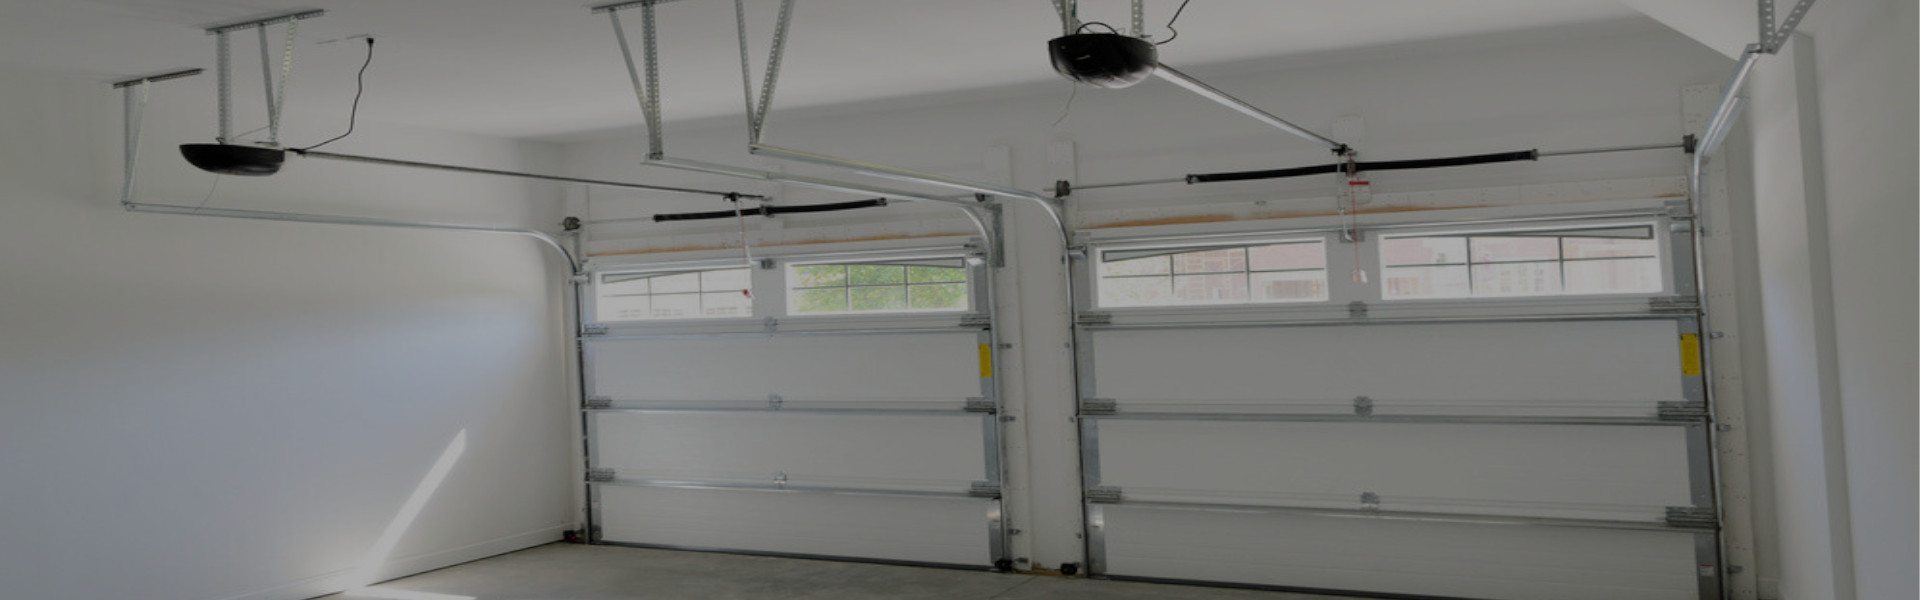 Slider Garage Door Repair, Glaziers in Waterloo, SE1